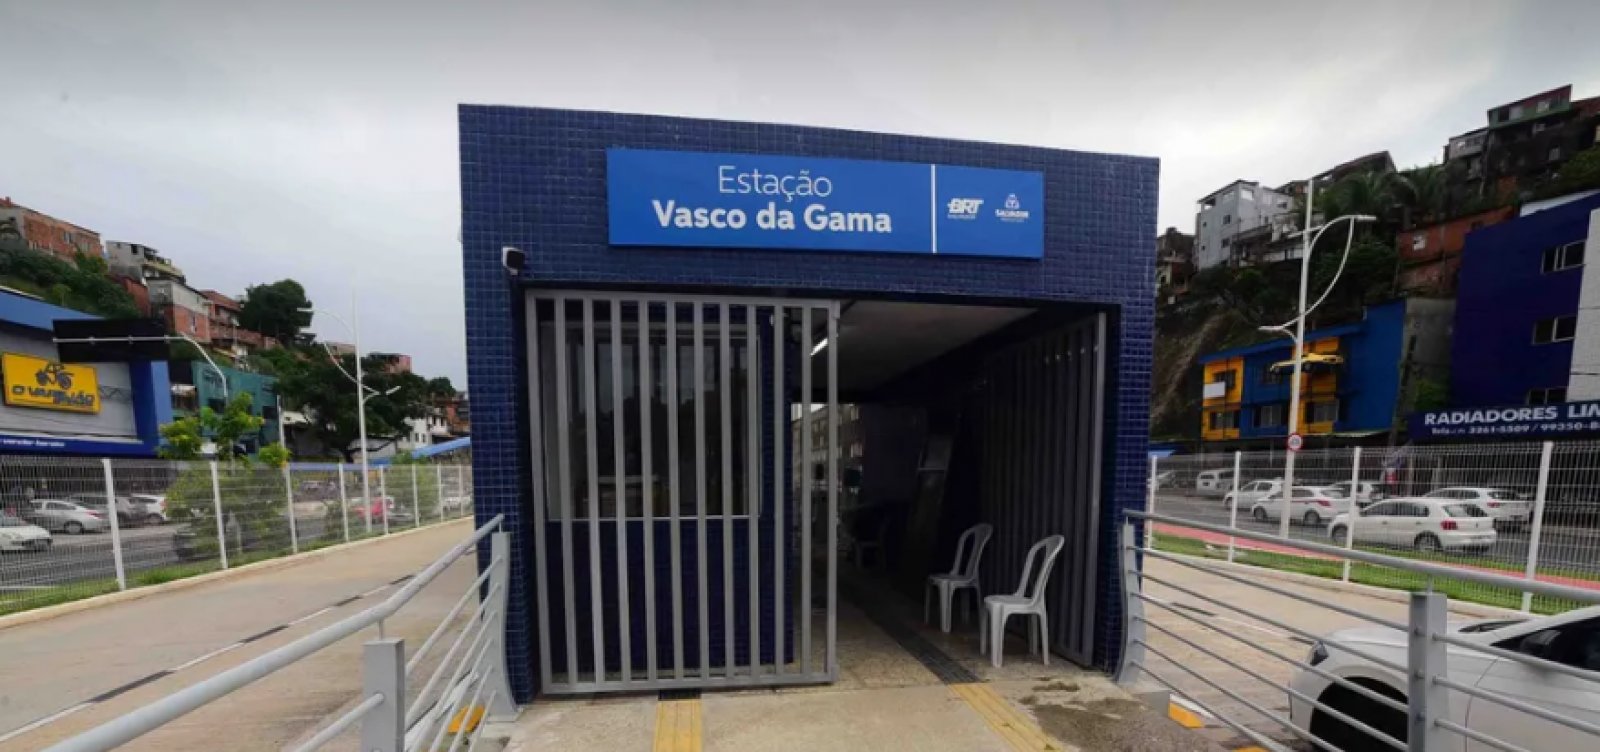 Início da operação da Estação do BRT na Avenida Vasco da Gama é adiado